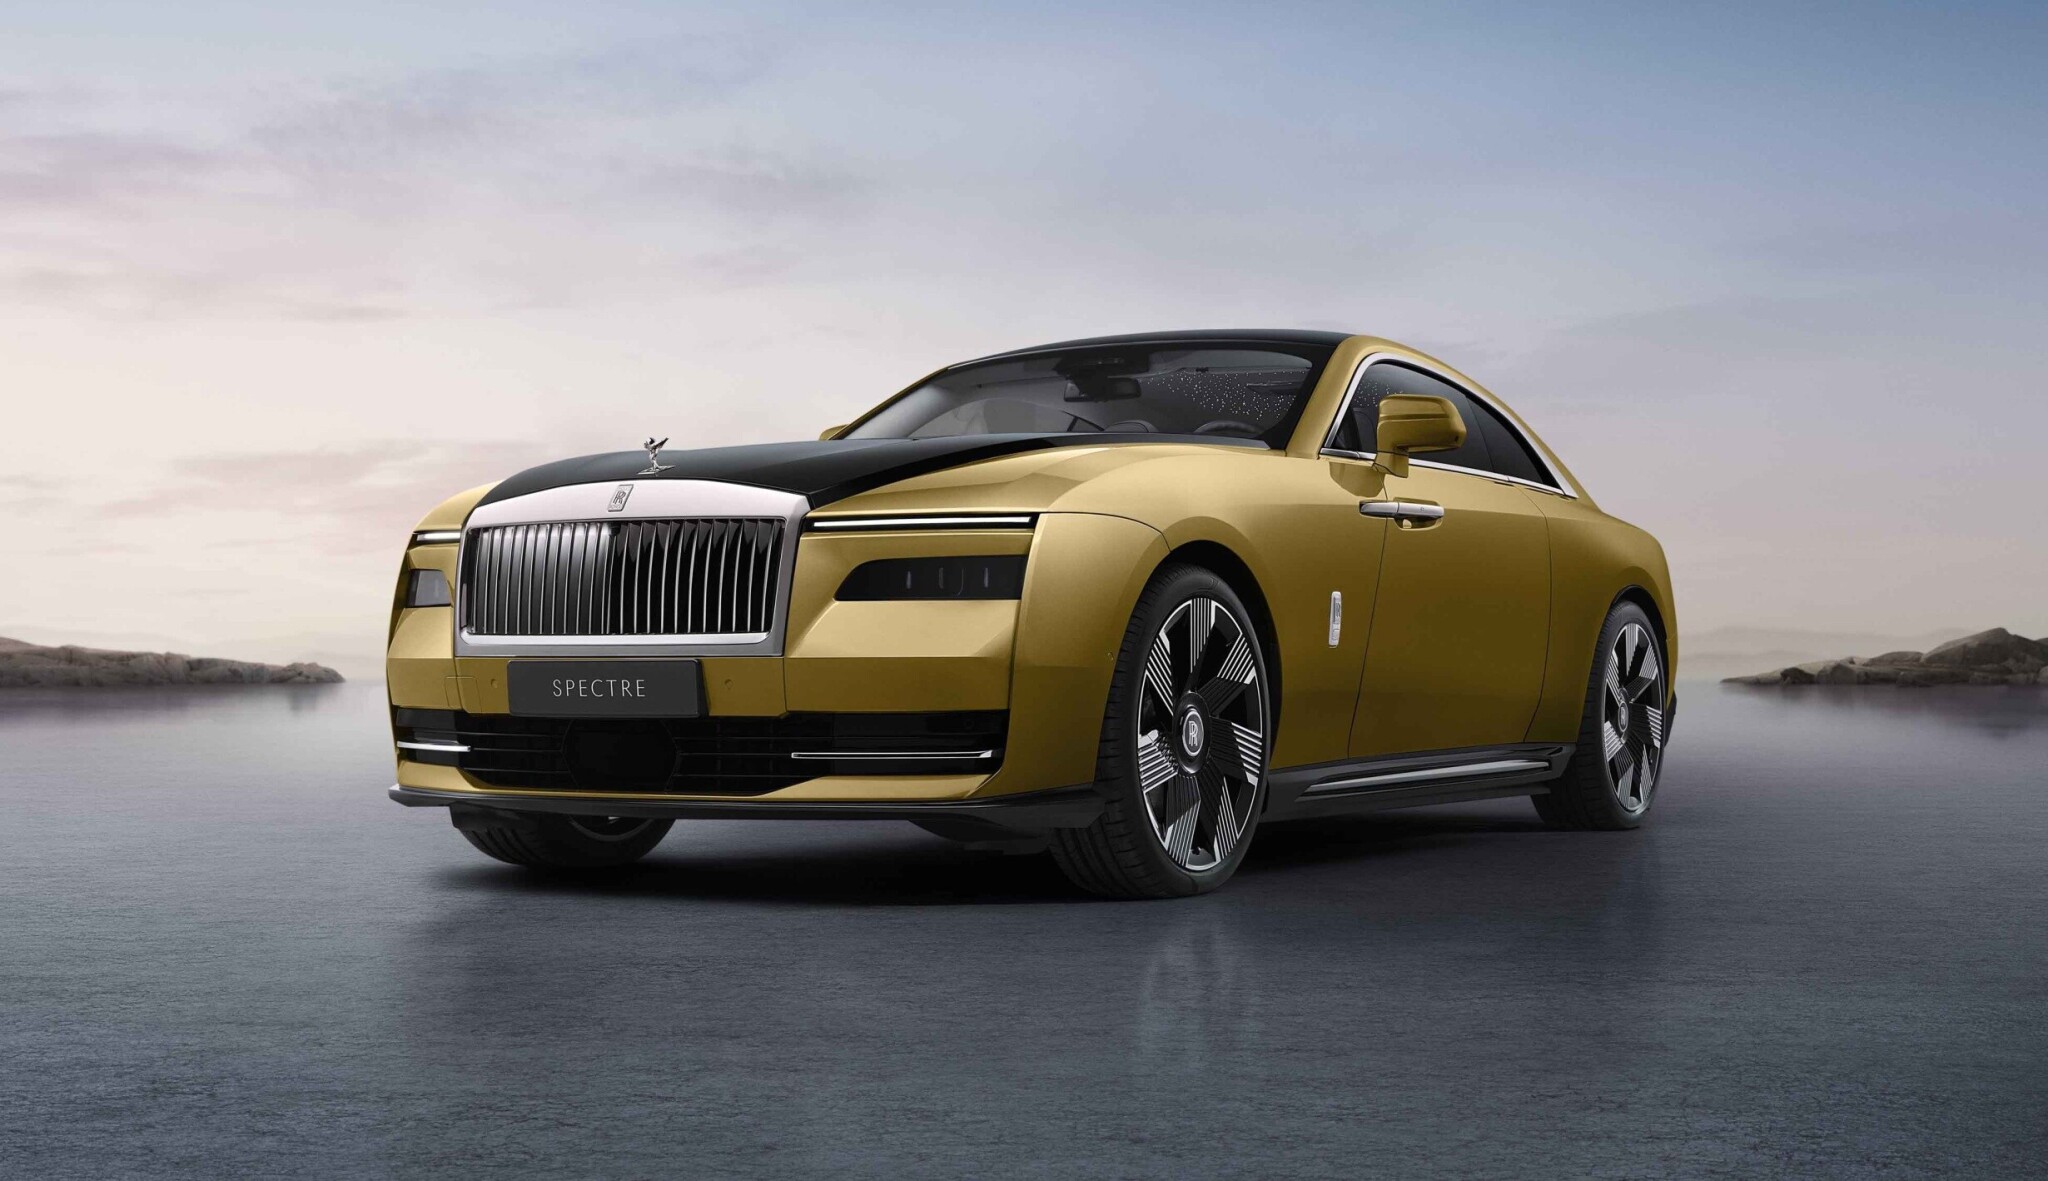 Elektrický Rolls-Royce chválí i ti, od kterých bych to nečekala, říká šéfka českého zastoupení